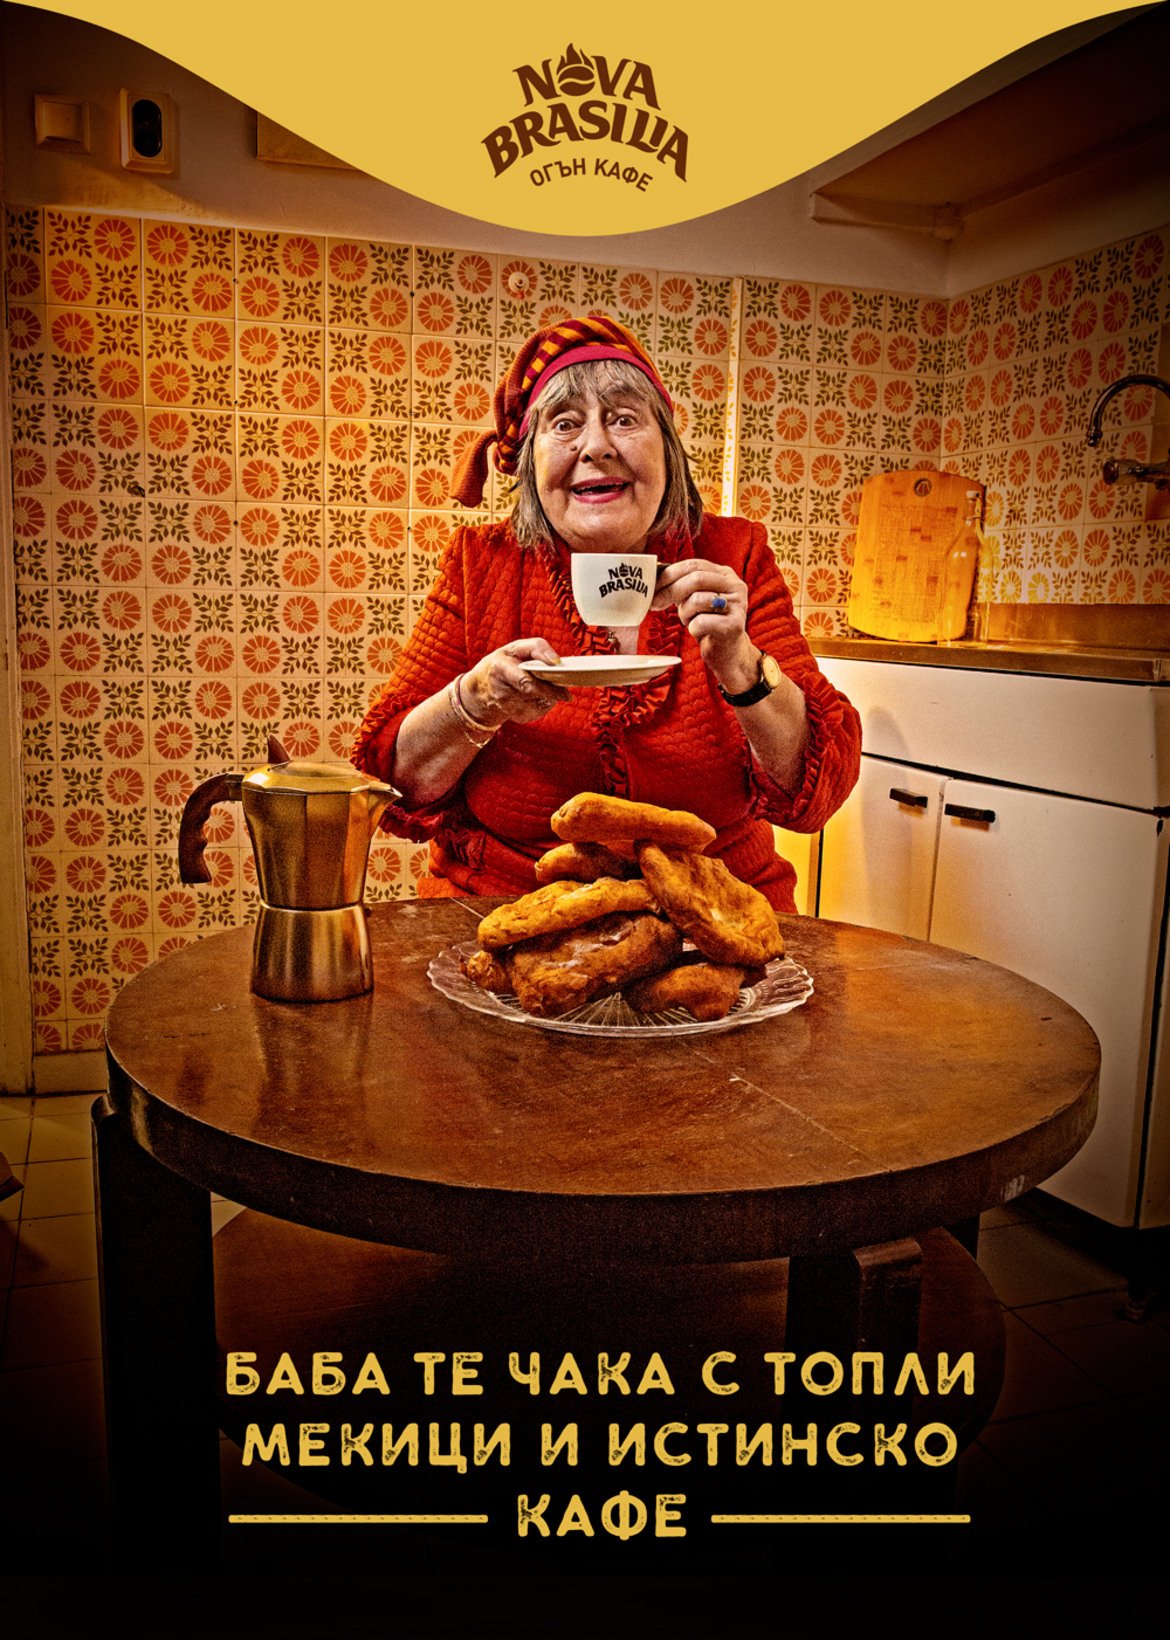 А ние с баба си пием кафе